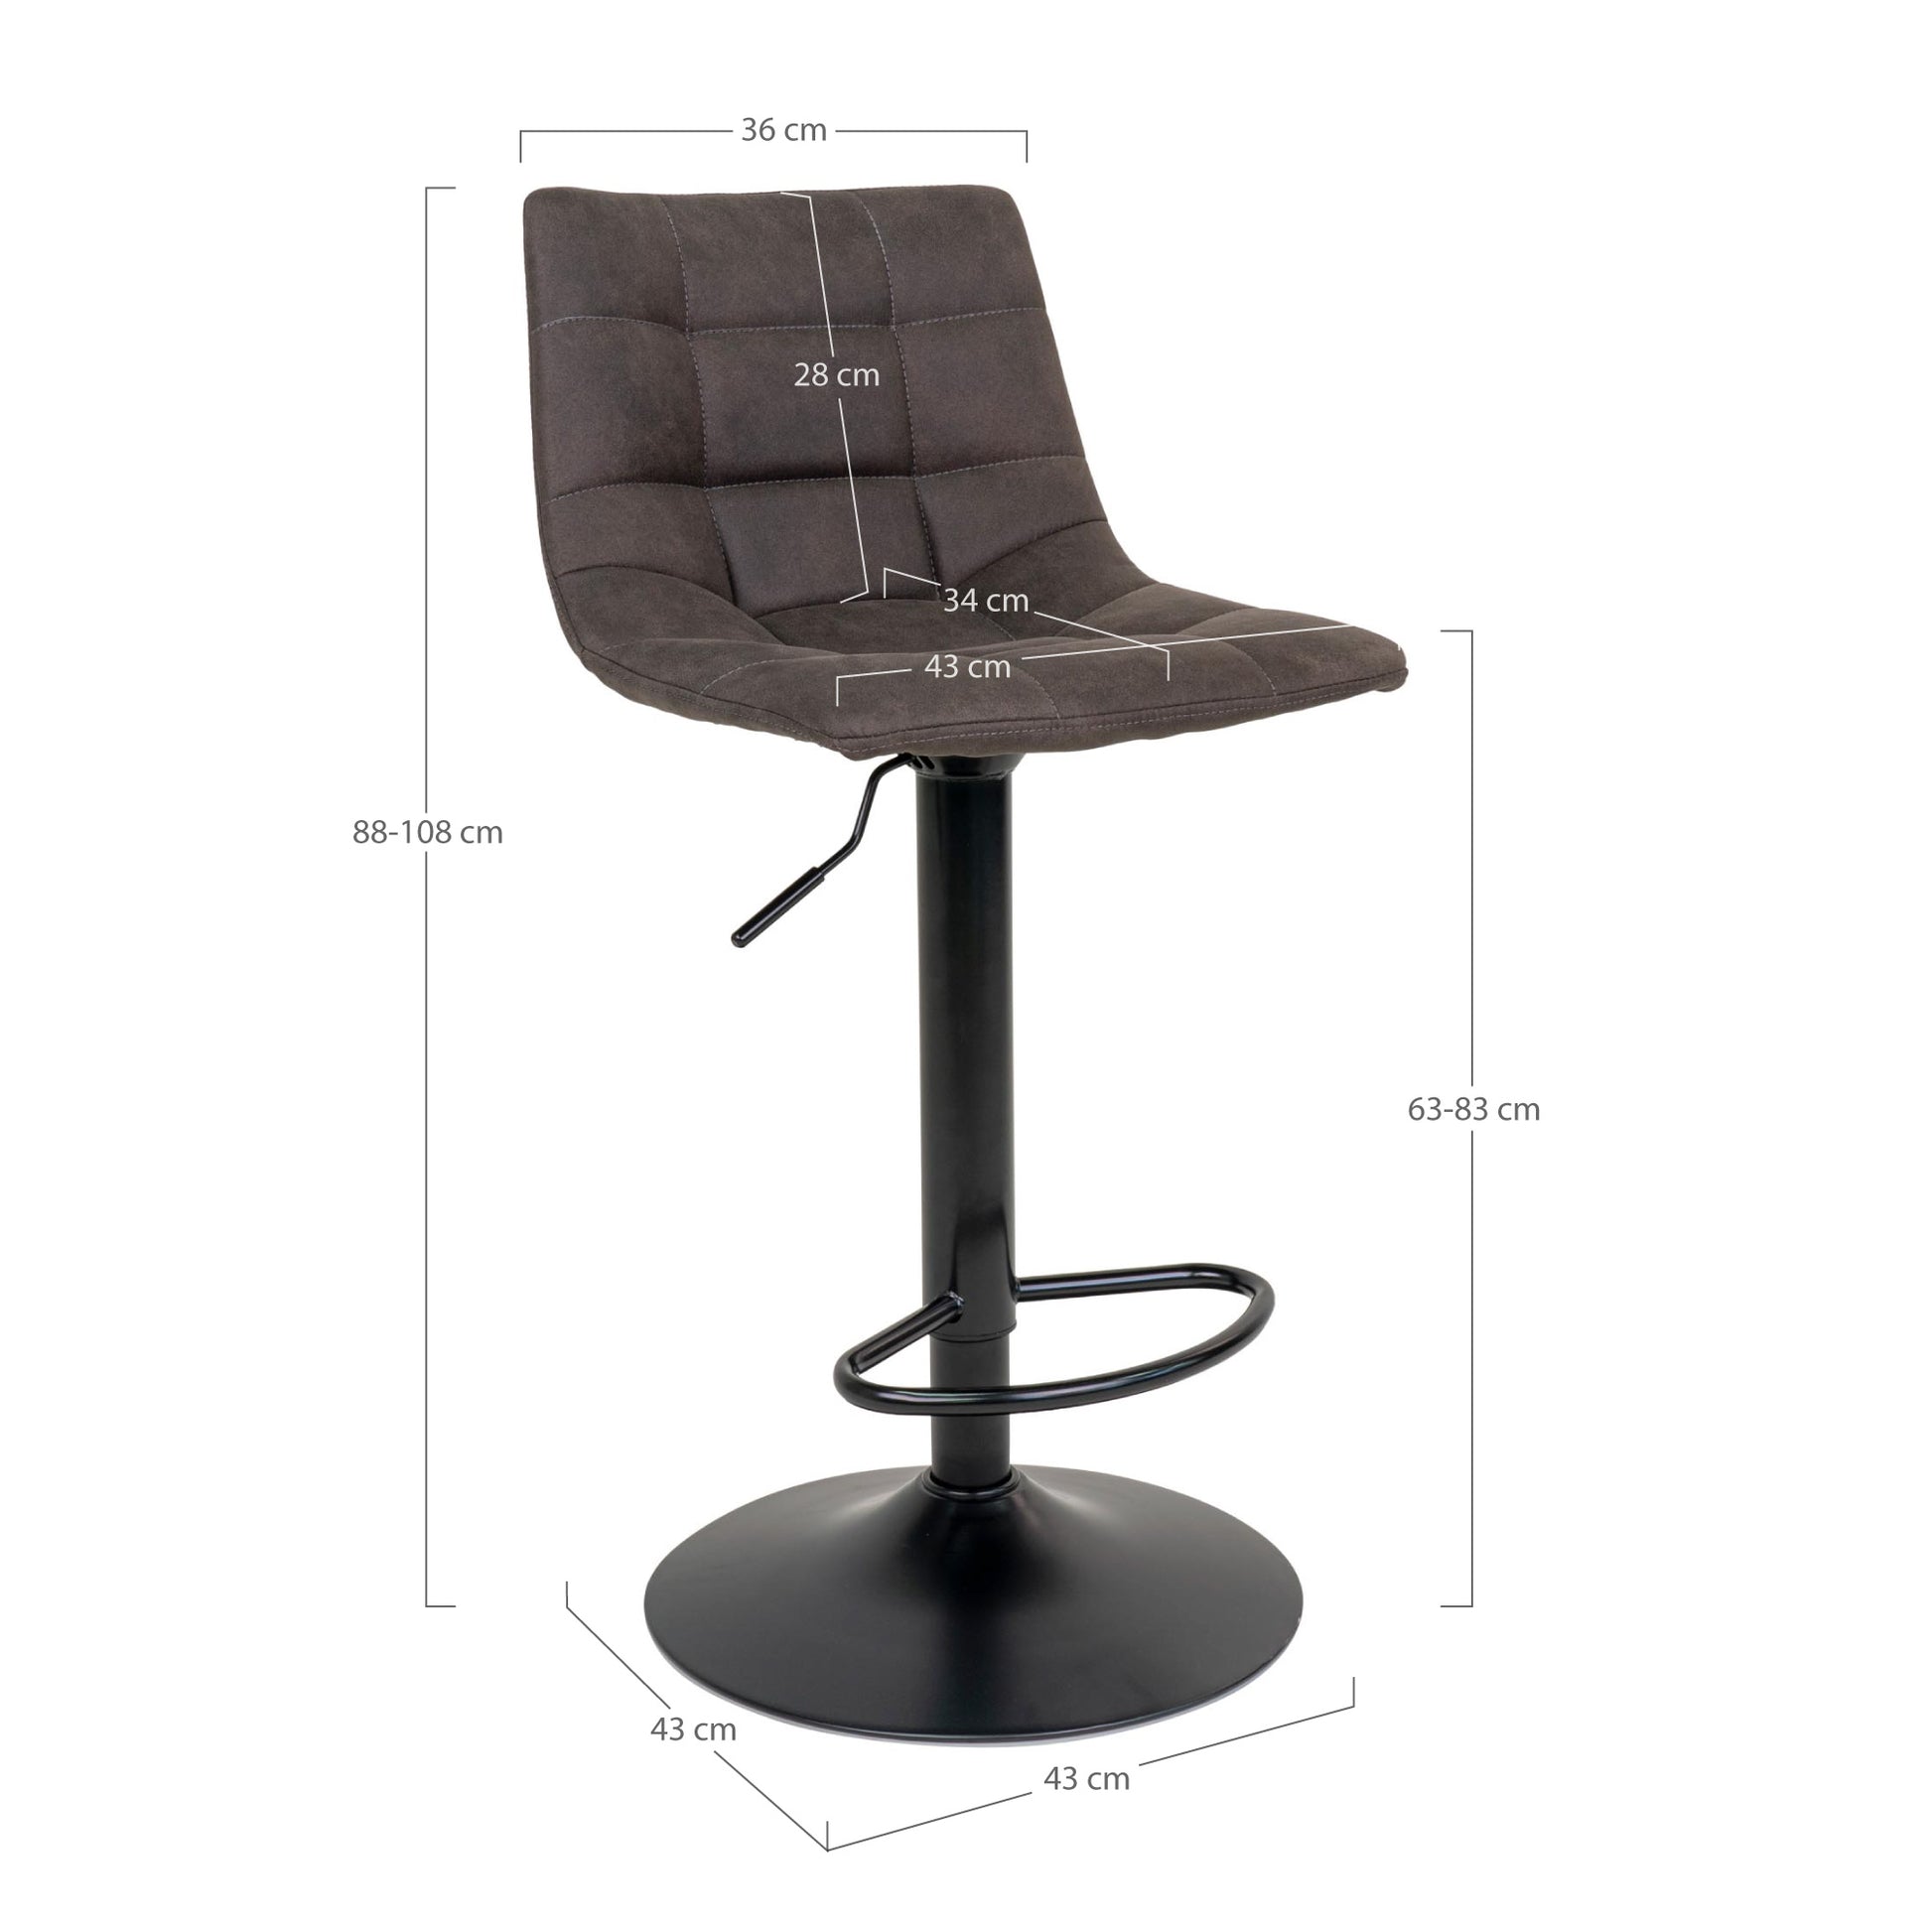 Middelfart Bar Chair - Barstoel in donkergrijs met zwarte poten - set van 2-Stoel-House Nordic-middelfart-bar-chair-bar-chair-in-dark-grey-with-black-legs-7-barstoel, hoge stoel, MIN2, stoel-Barstoel in donkergrijs met zwarte poten Materiaal Microvezel, staal Kleur Grijs-5713917009398-1001302-Cerasus Homestyle